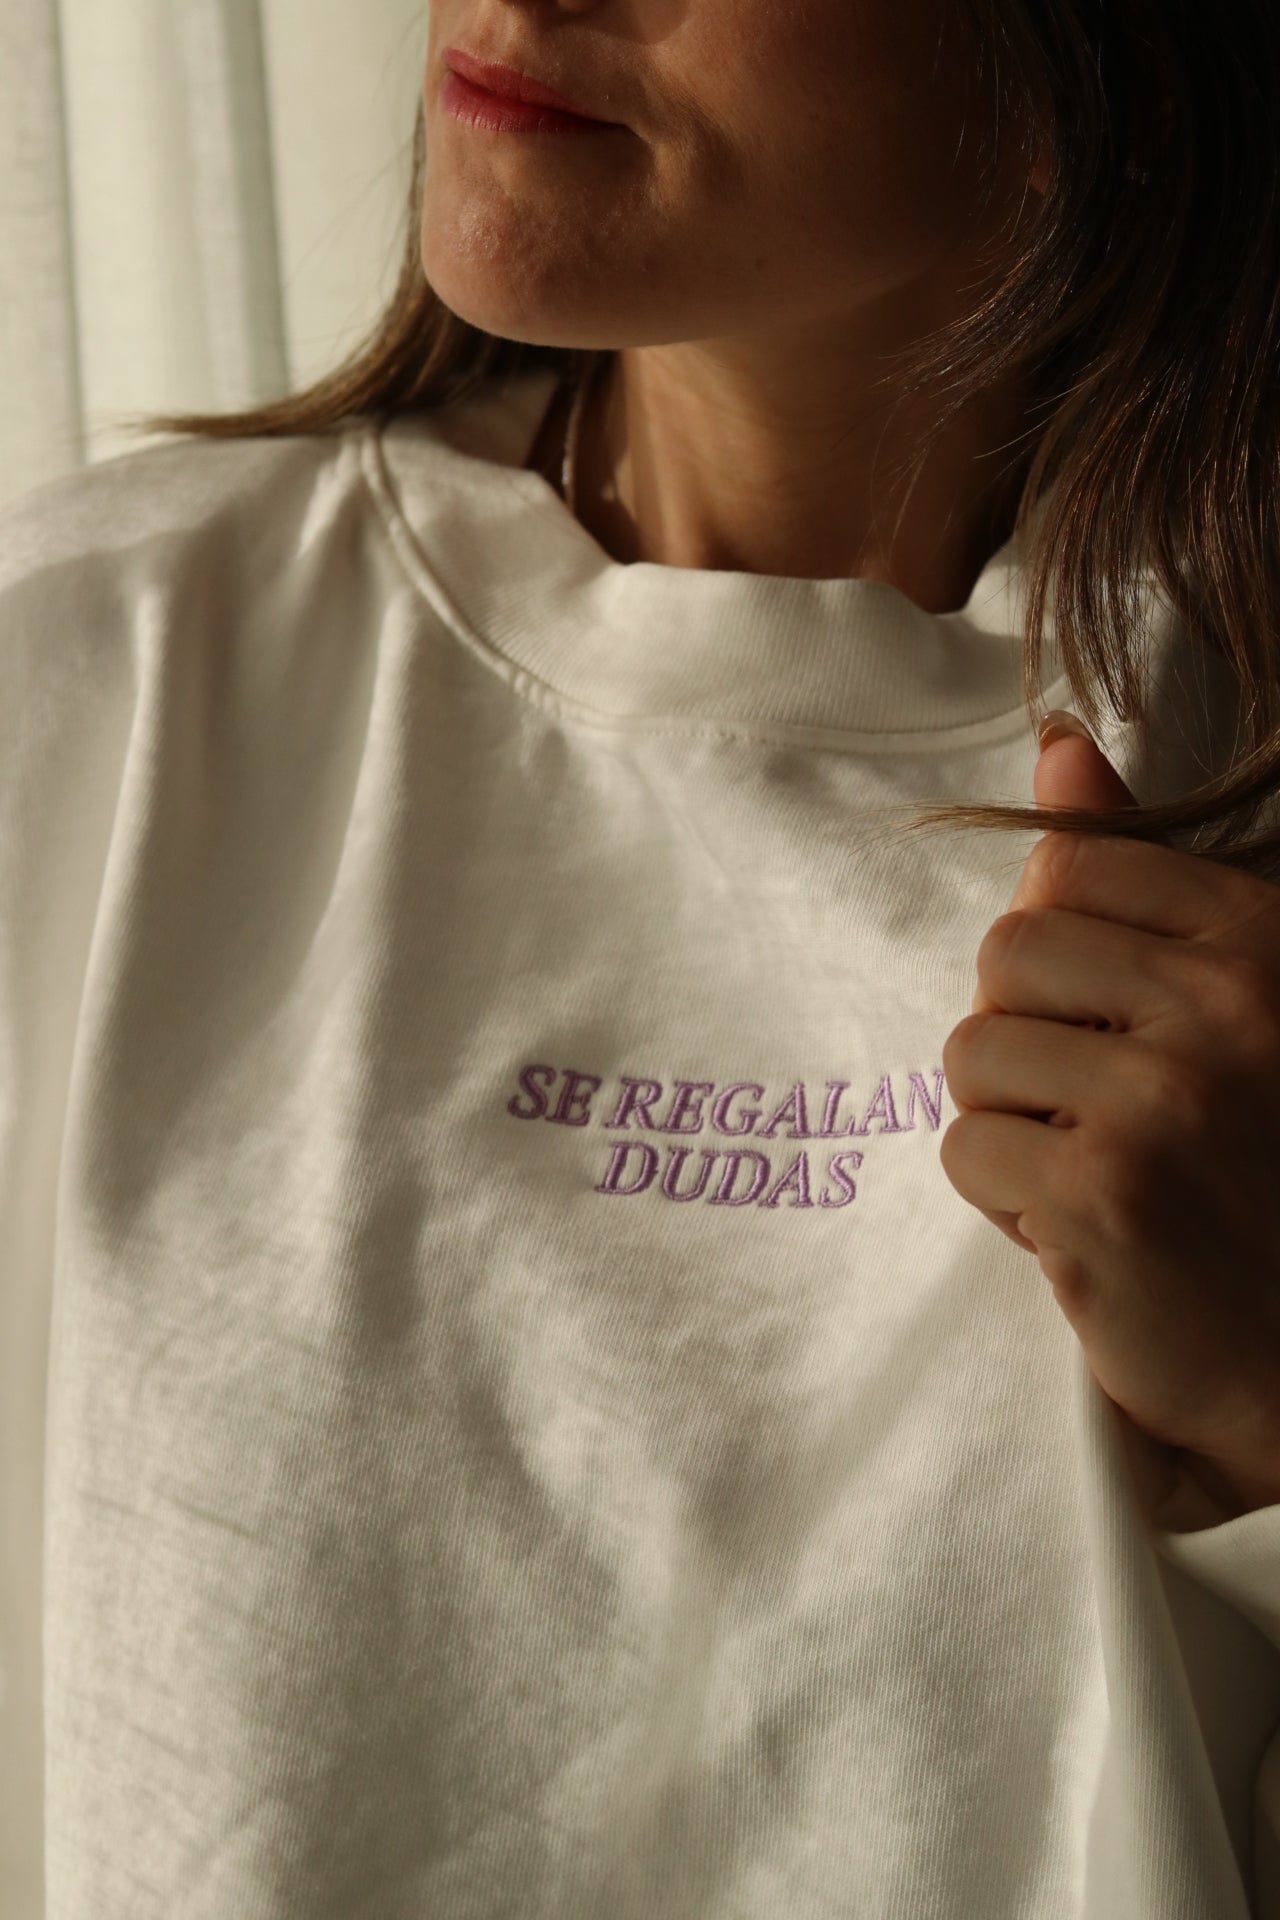 Sudadera Oversized Se Regalan Dudas - Sweatshirt con Mensaje - Tu Compañera de Reflexión - 100% Algodón